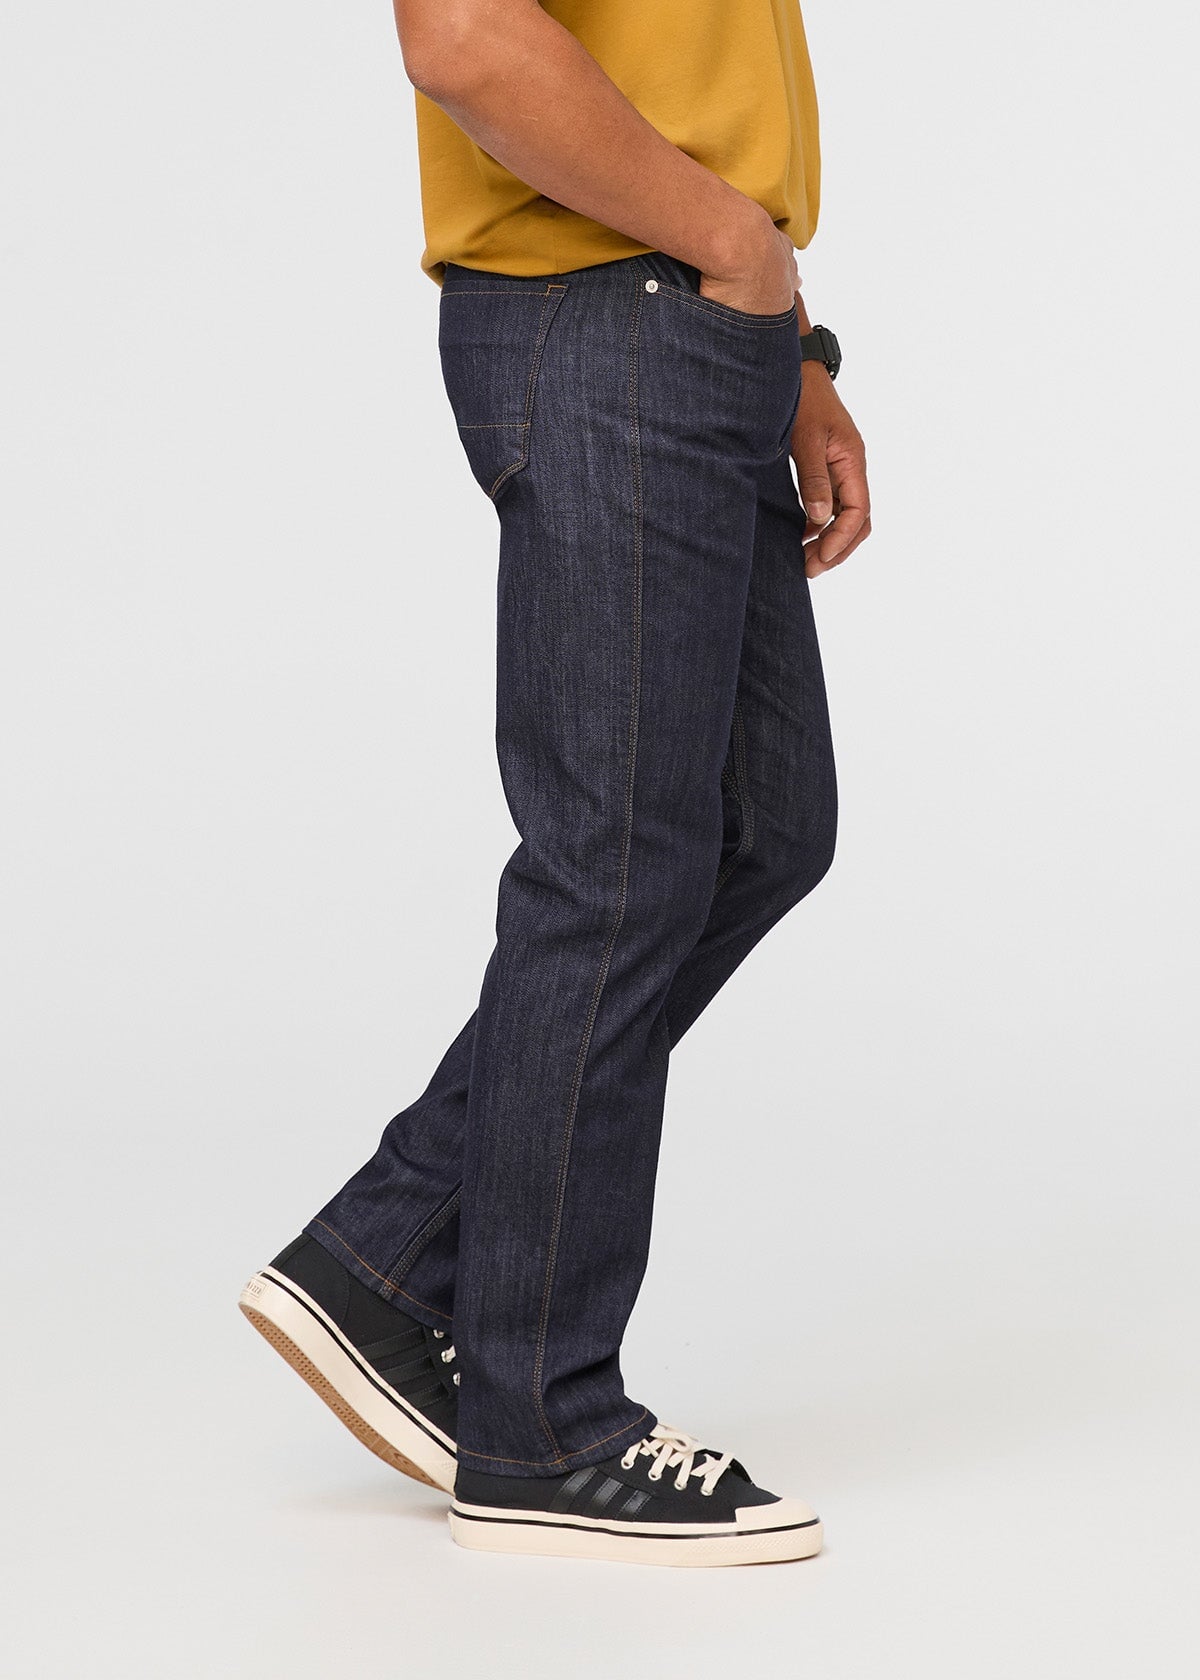 J Brand Zipper Fly Classic, Straight Leg Jeans for Men